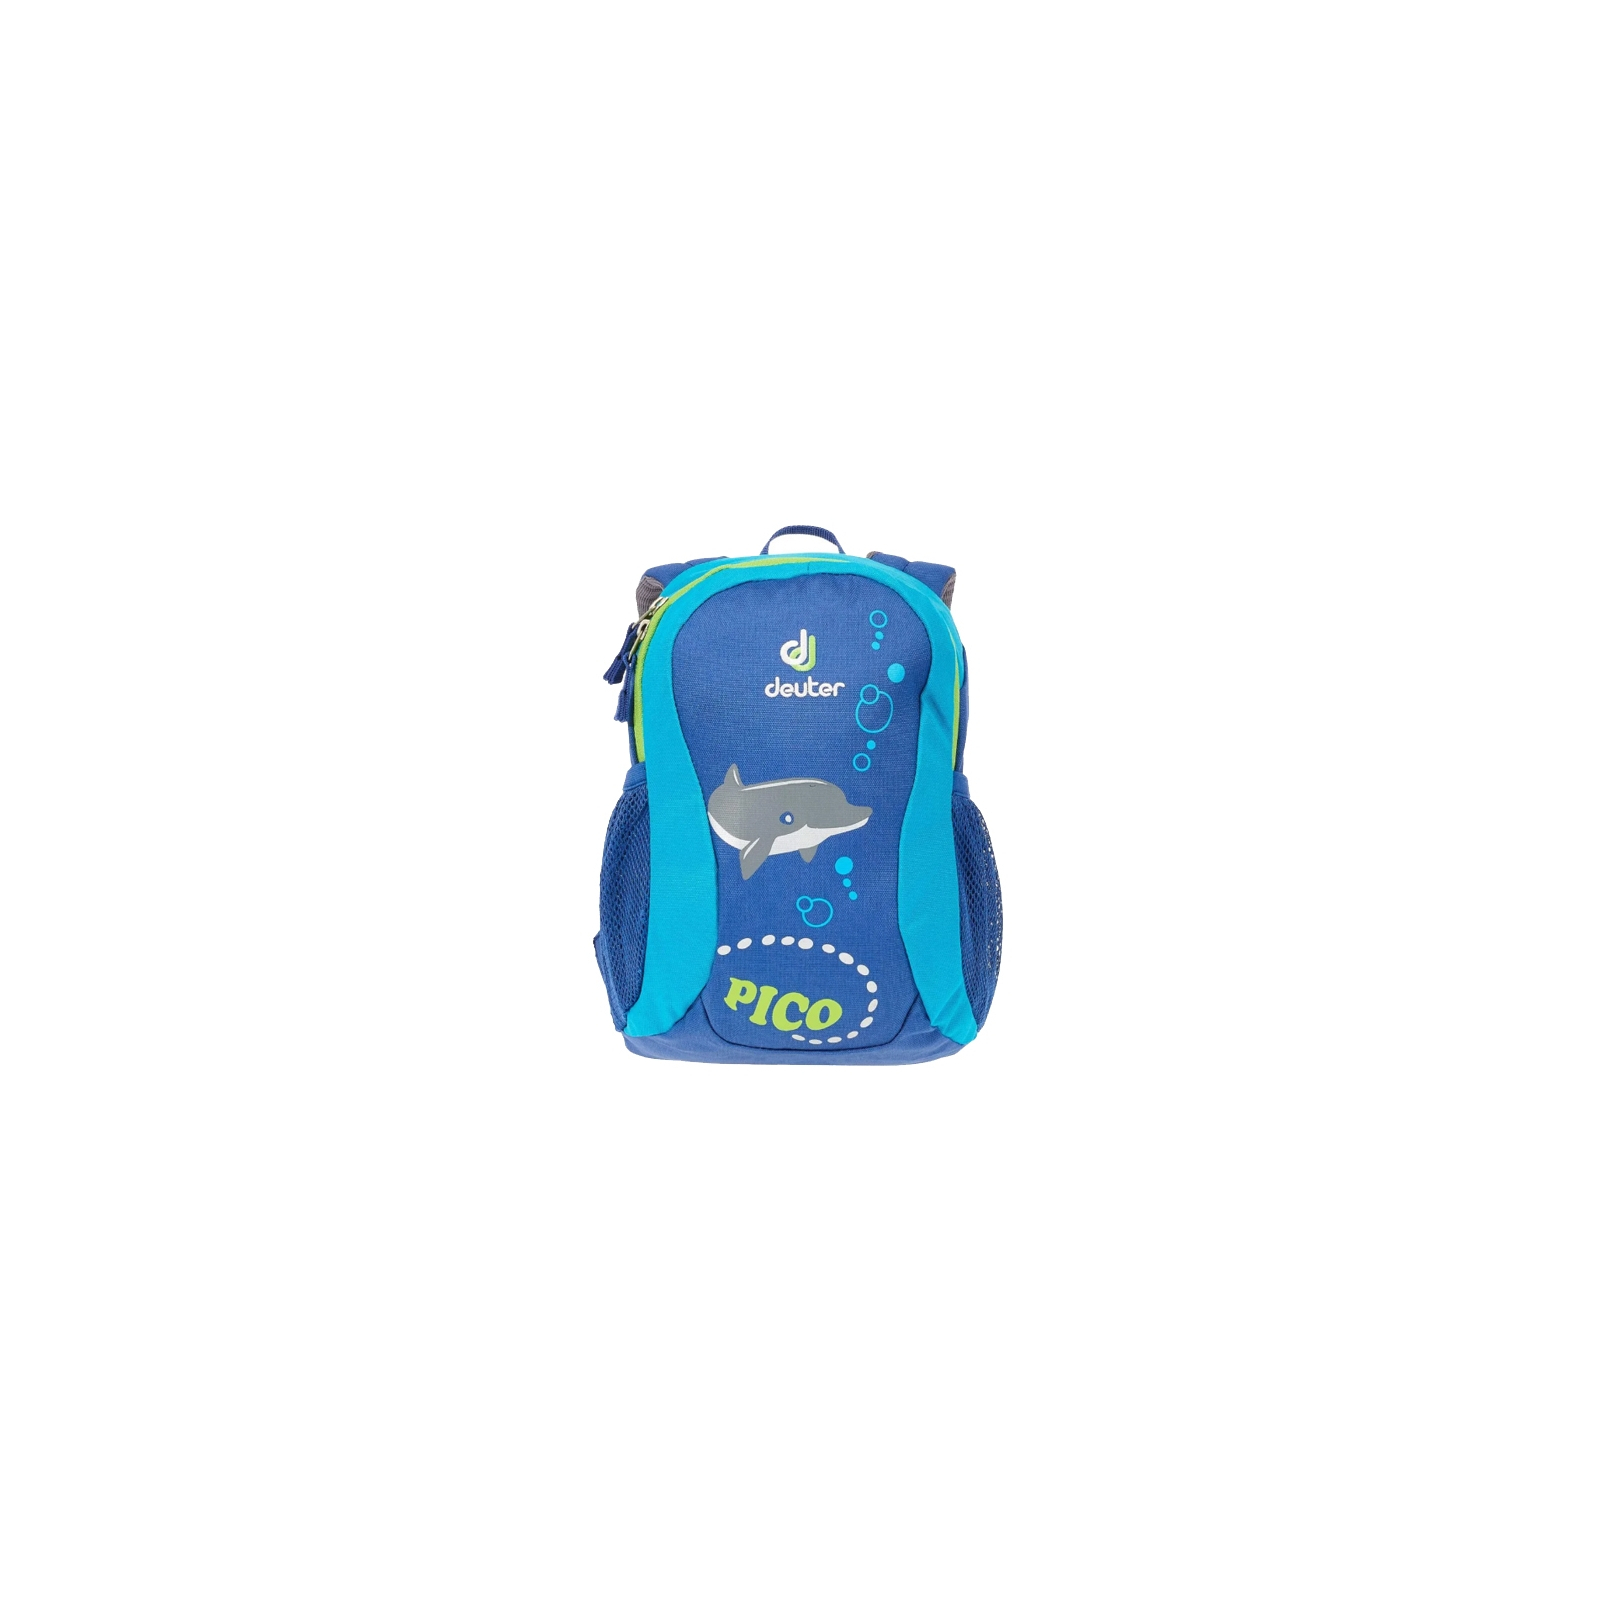 Рюкзак школьный Deuter Pico 3391 indigo-turquoise (36043 3391) изображение 2